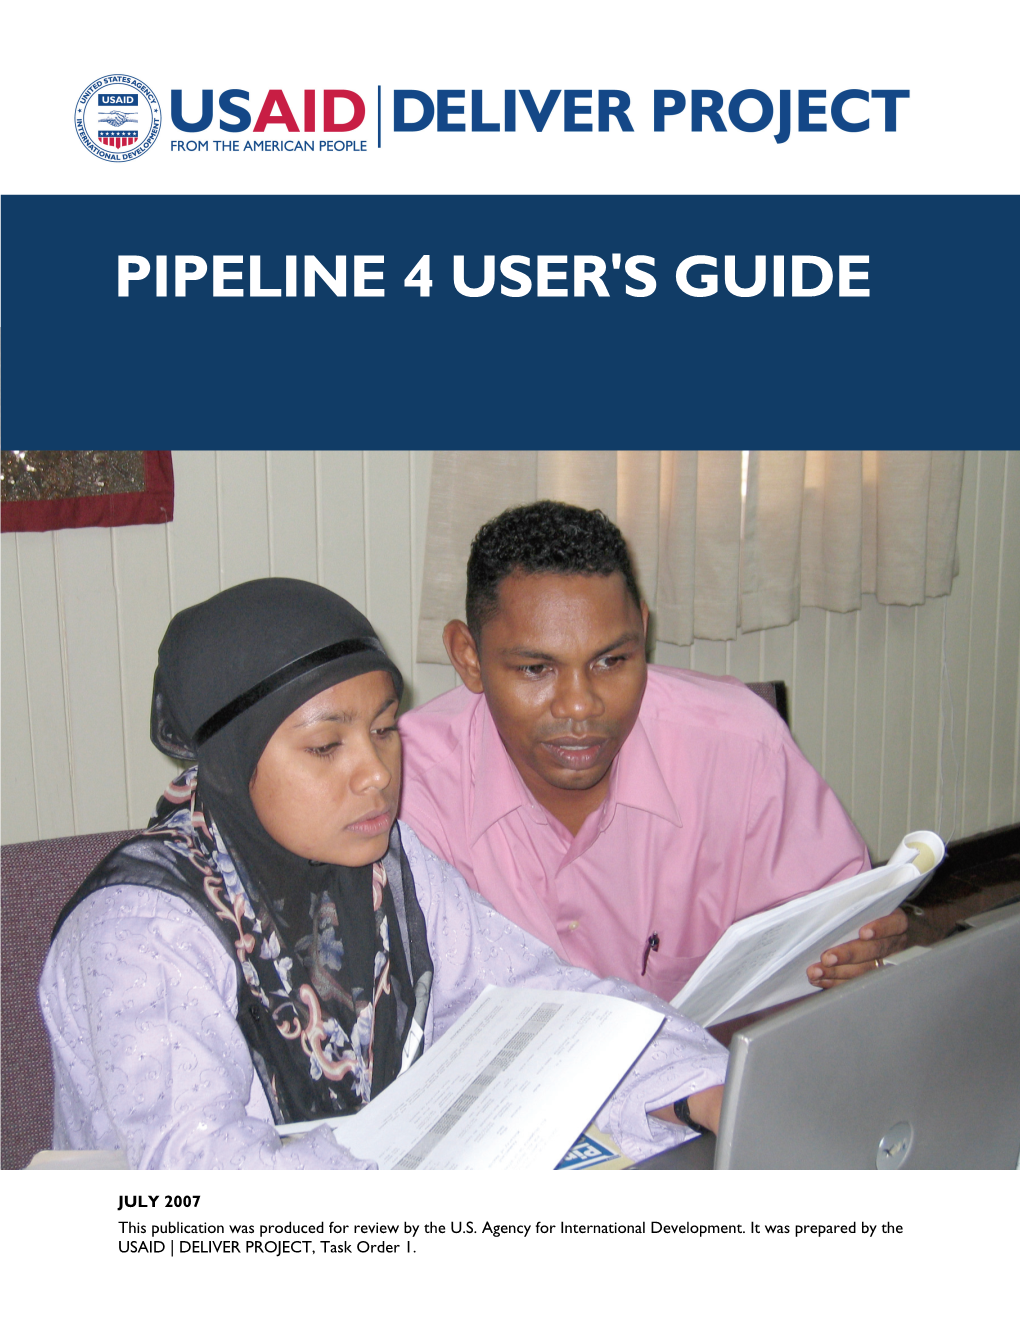 Pipeline 4 User's Guide